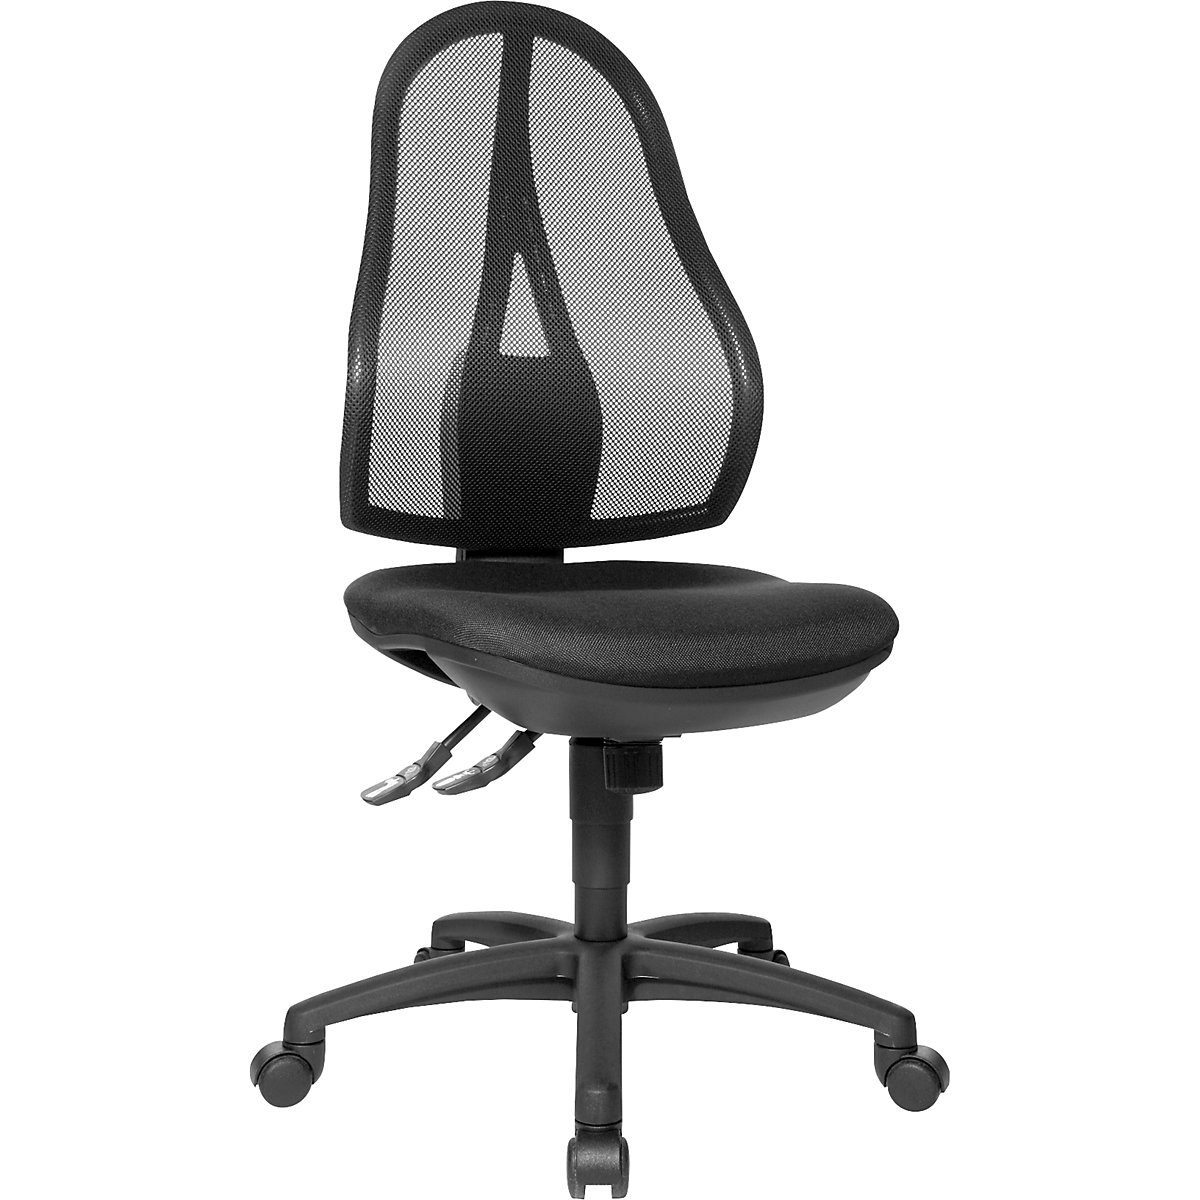 Uredska okretna stolica OPEN POINT SY – Topstar, bez naslona za ruke, mrežasti naslon za leđa u crnoj boji, presvlaka u crnoj boji-6